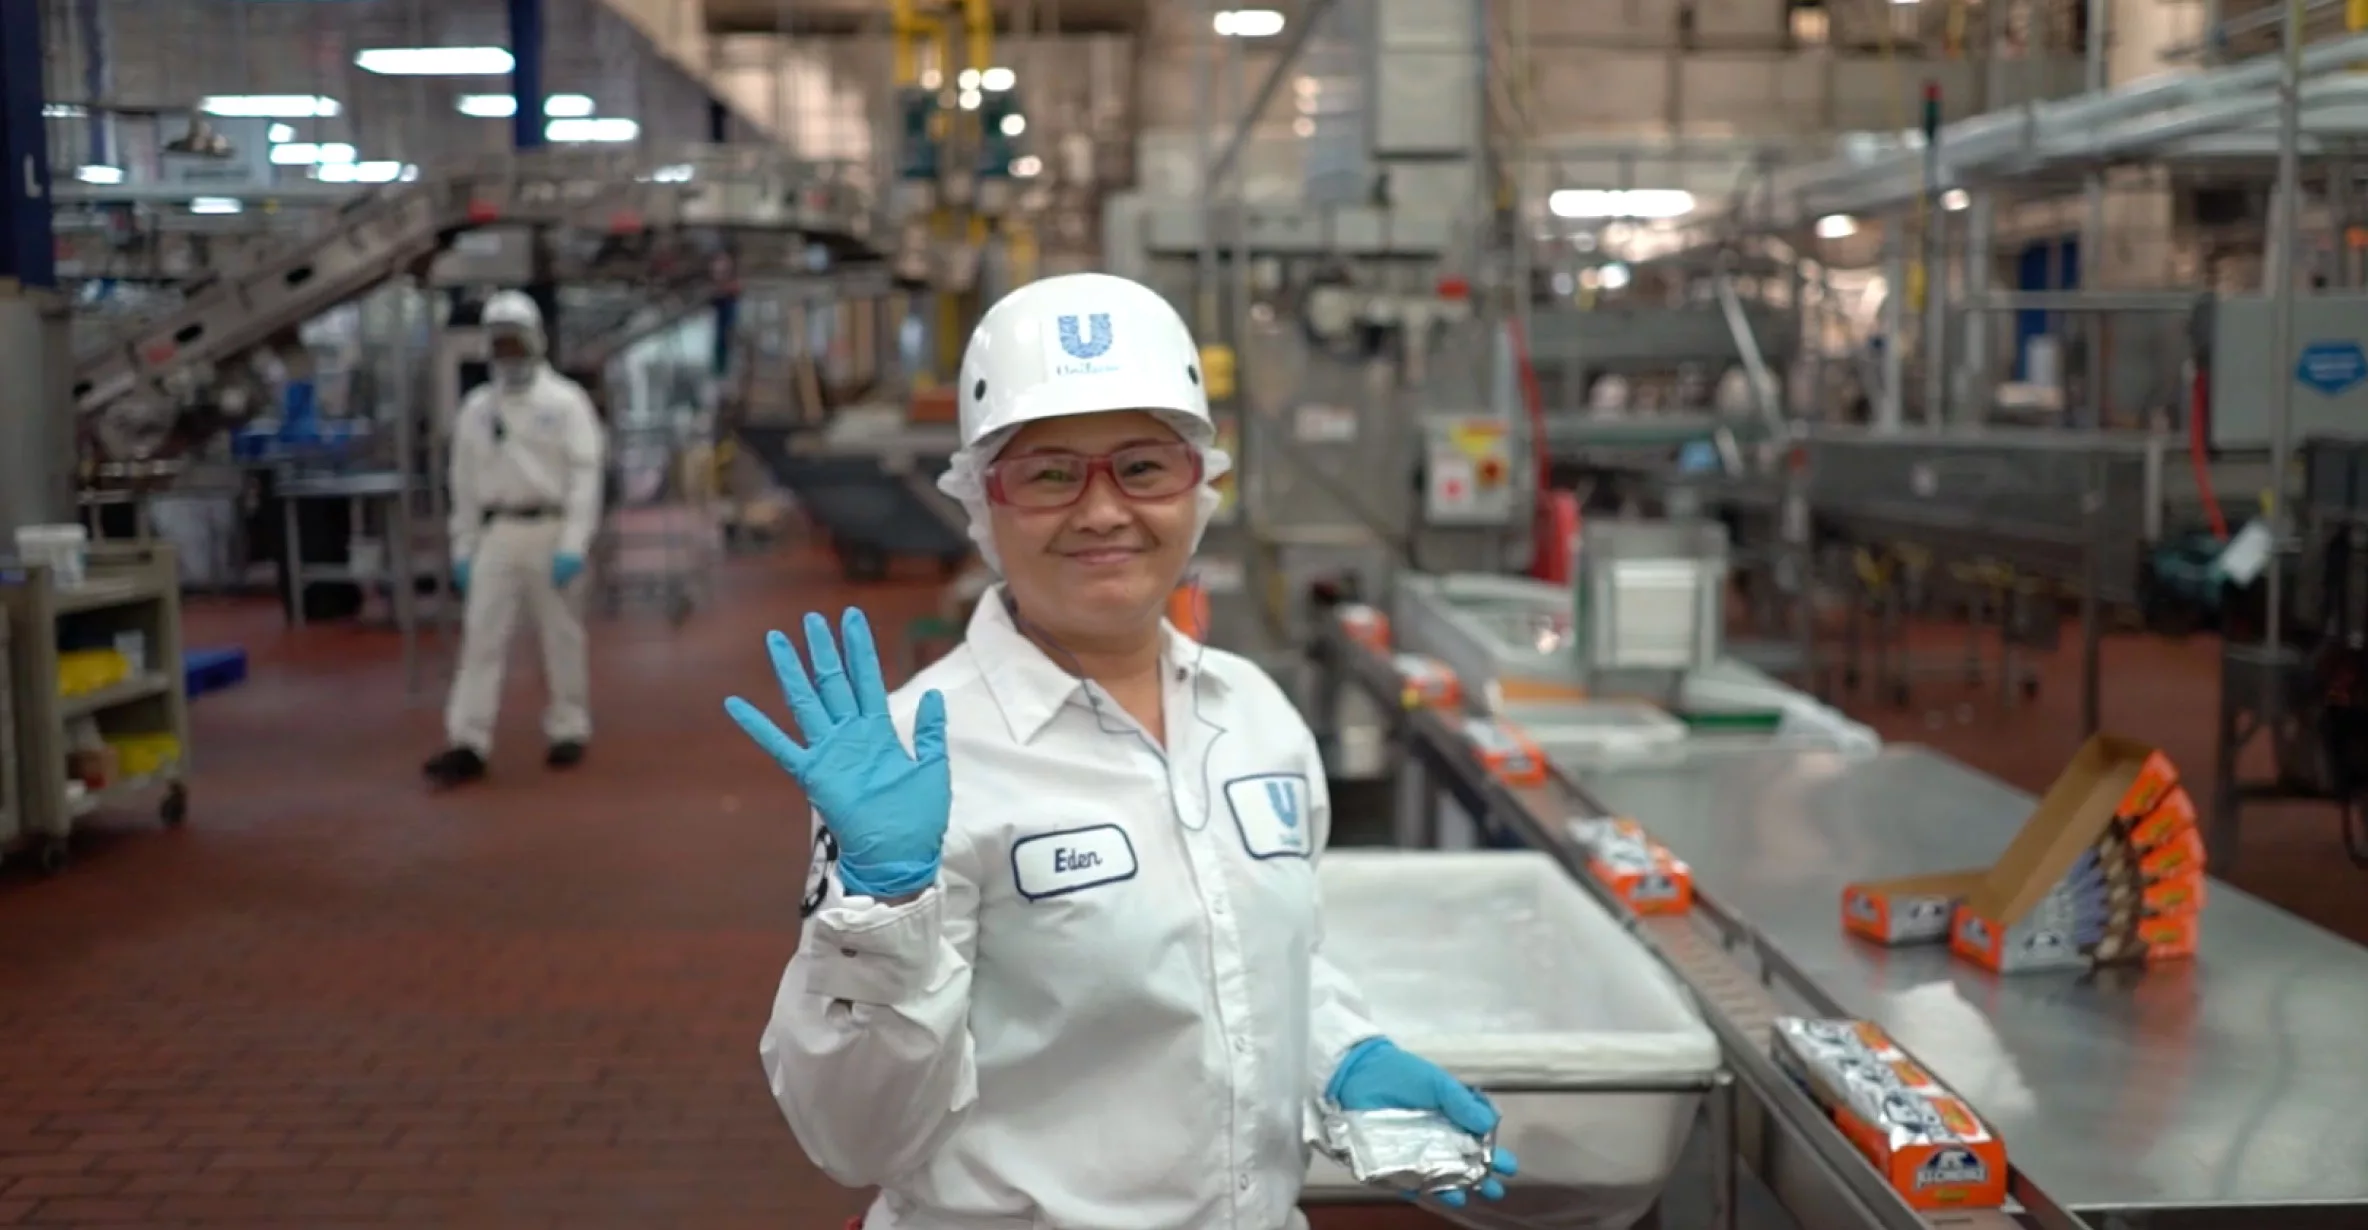 Video still for Unilever's employer brand recruitment marketing video